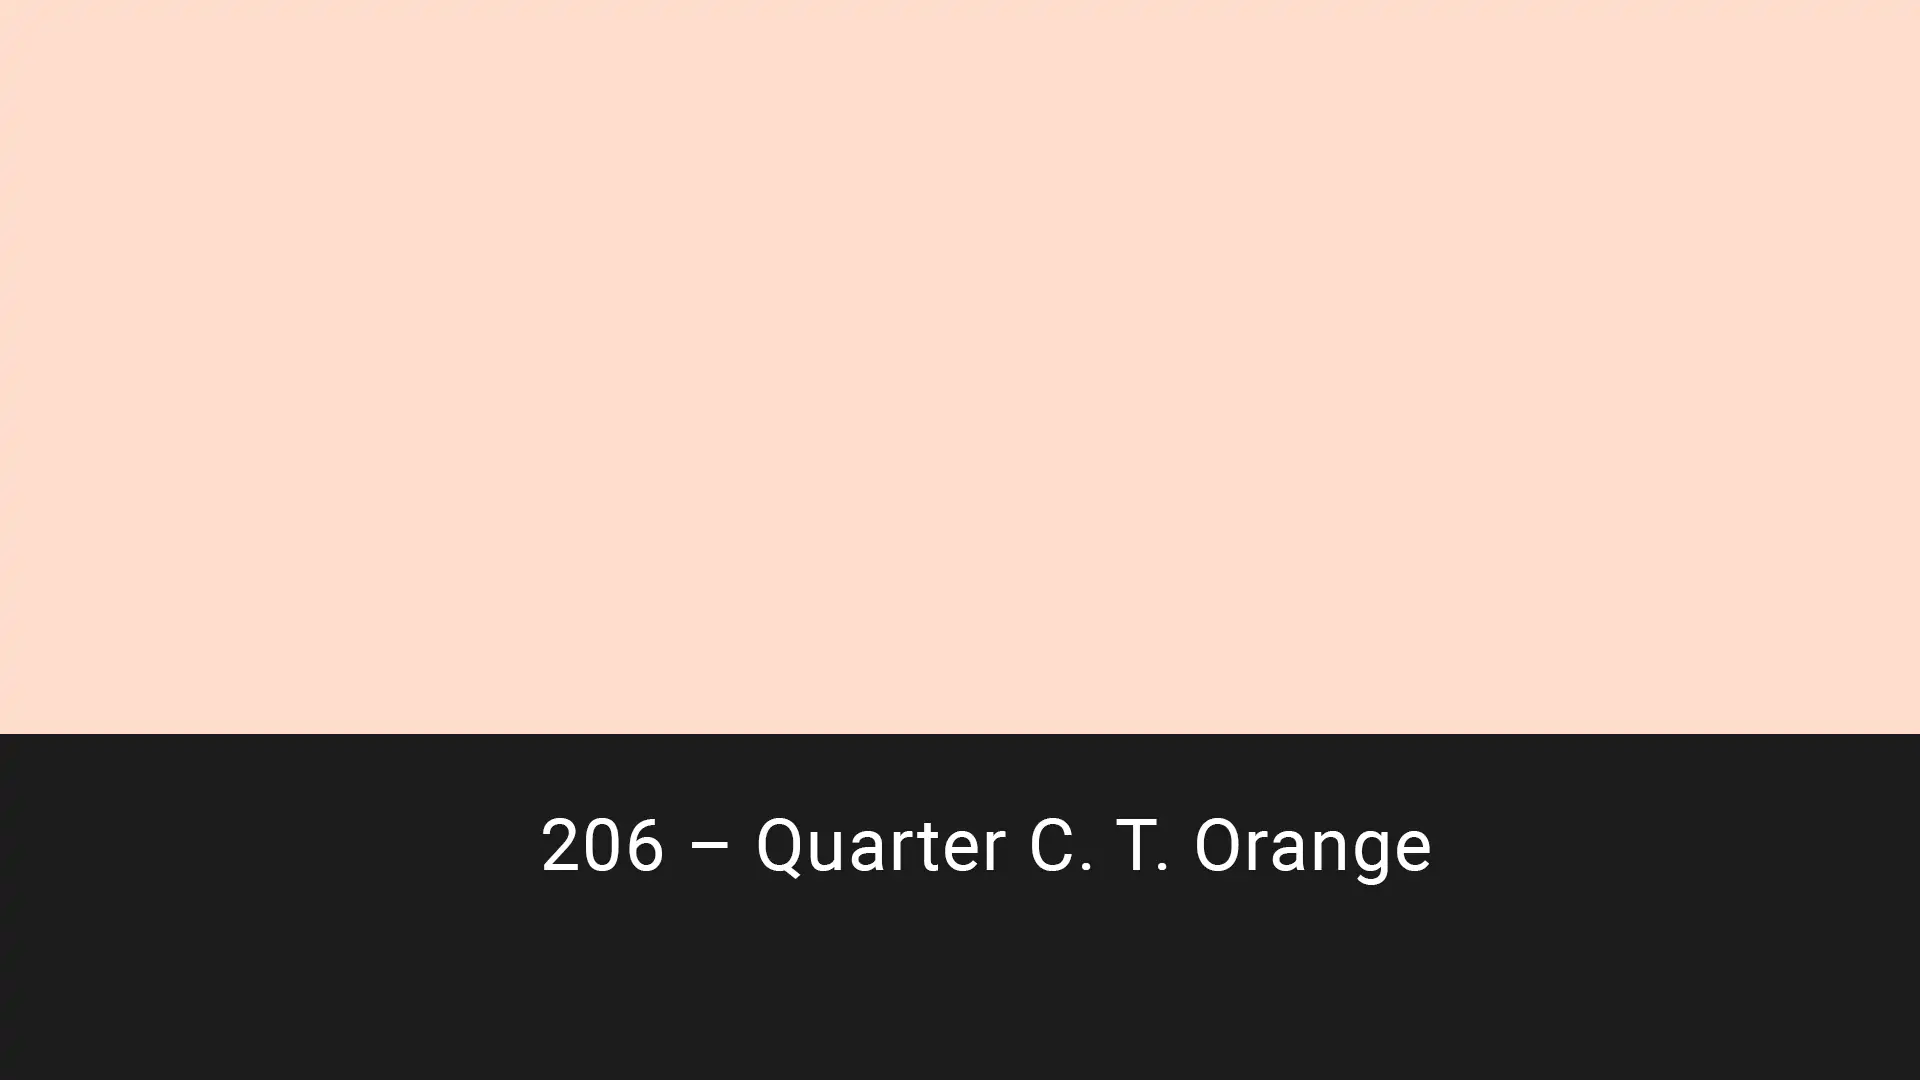 Cotech filters 206 Quarter C.T. Orange